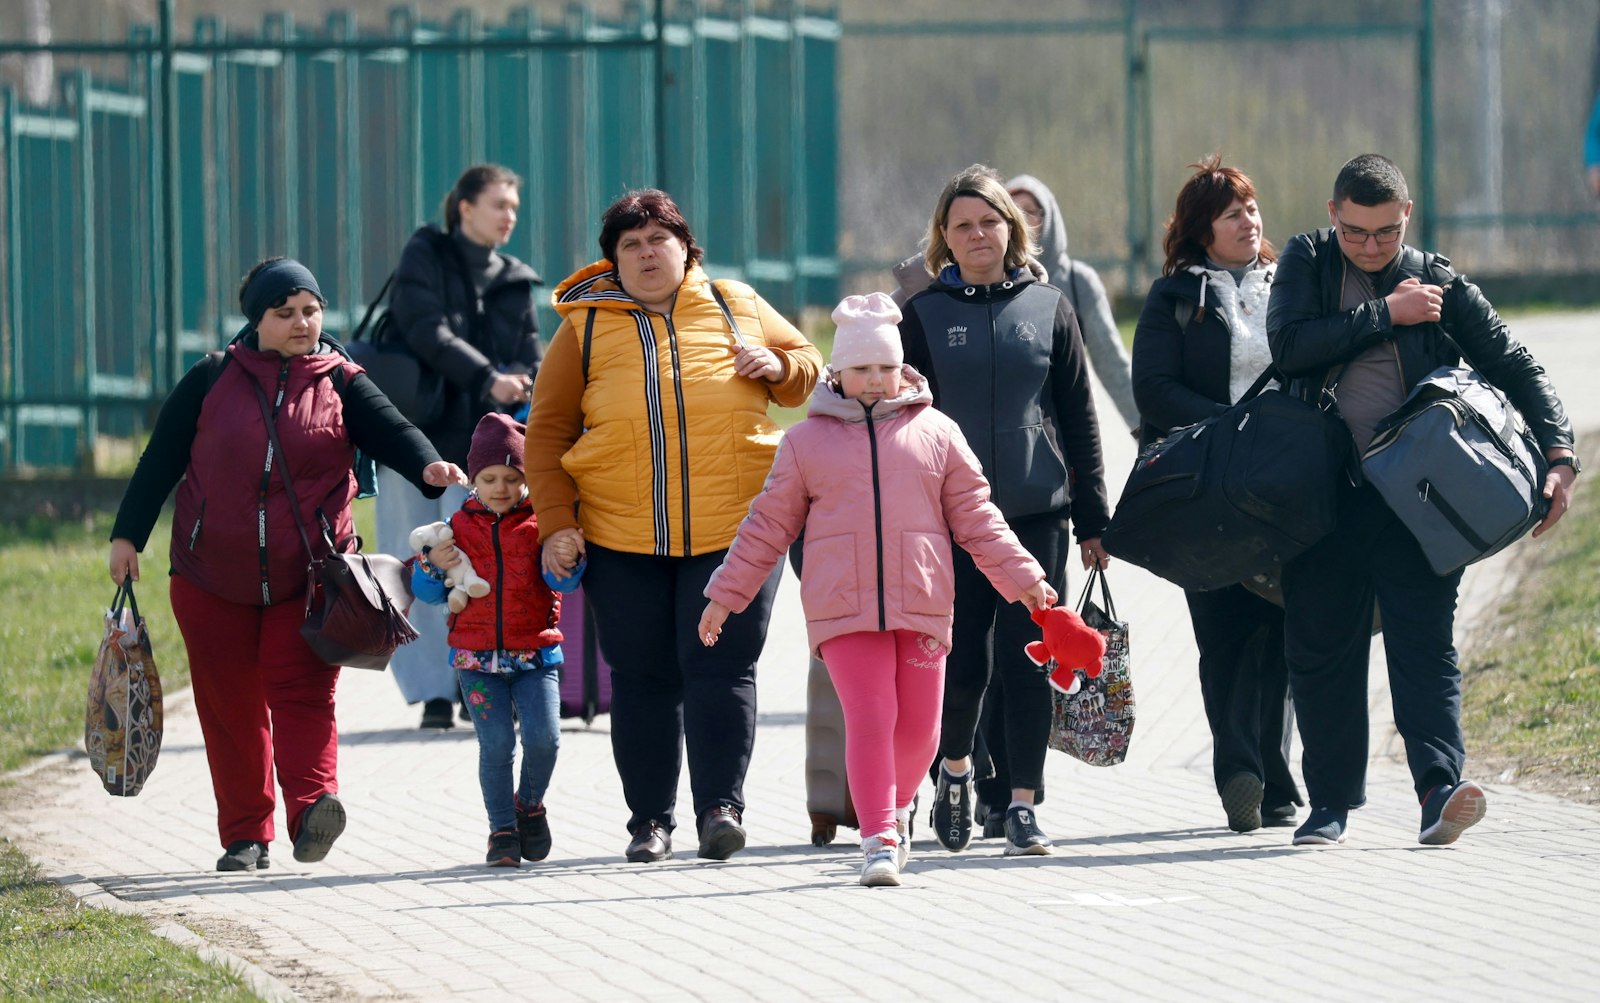 Refugiados ucranianos caminan después de cruzar la frontera entre Ucrania y Polonia en Medyka, Polonia, el 12 de abril de 2022, tras huir de la guerra rusa. En Polonia, la comunidad ecuménica de El Arca en Wroclaw, está ayudando a los refugiados ucranianos, incluidos los que tienen discapacidades de desarrollo. (CNS photo/Leonhard Foeger, Reuters)